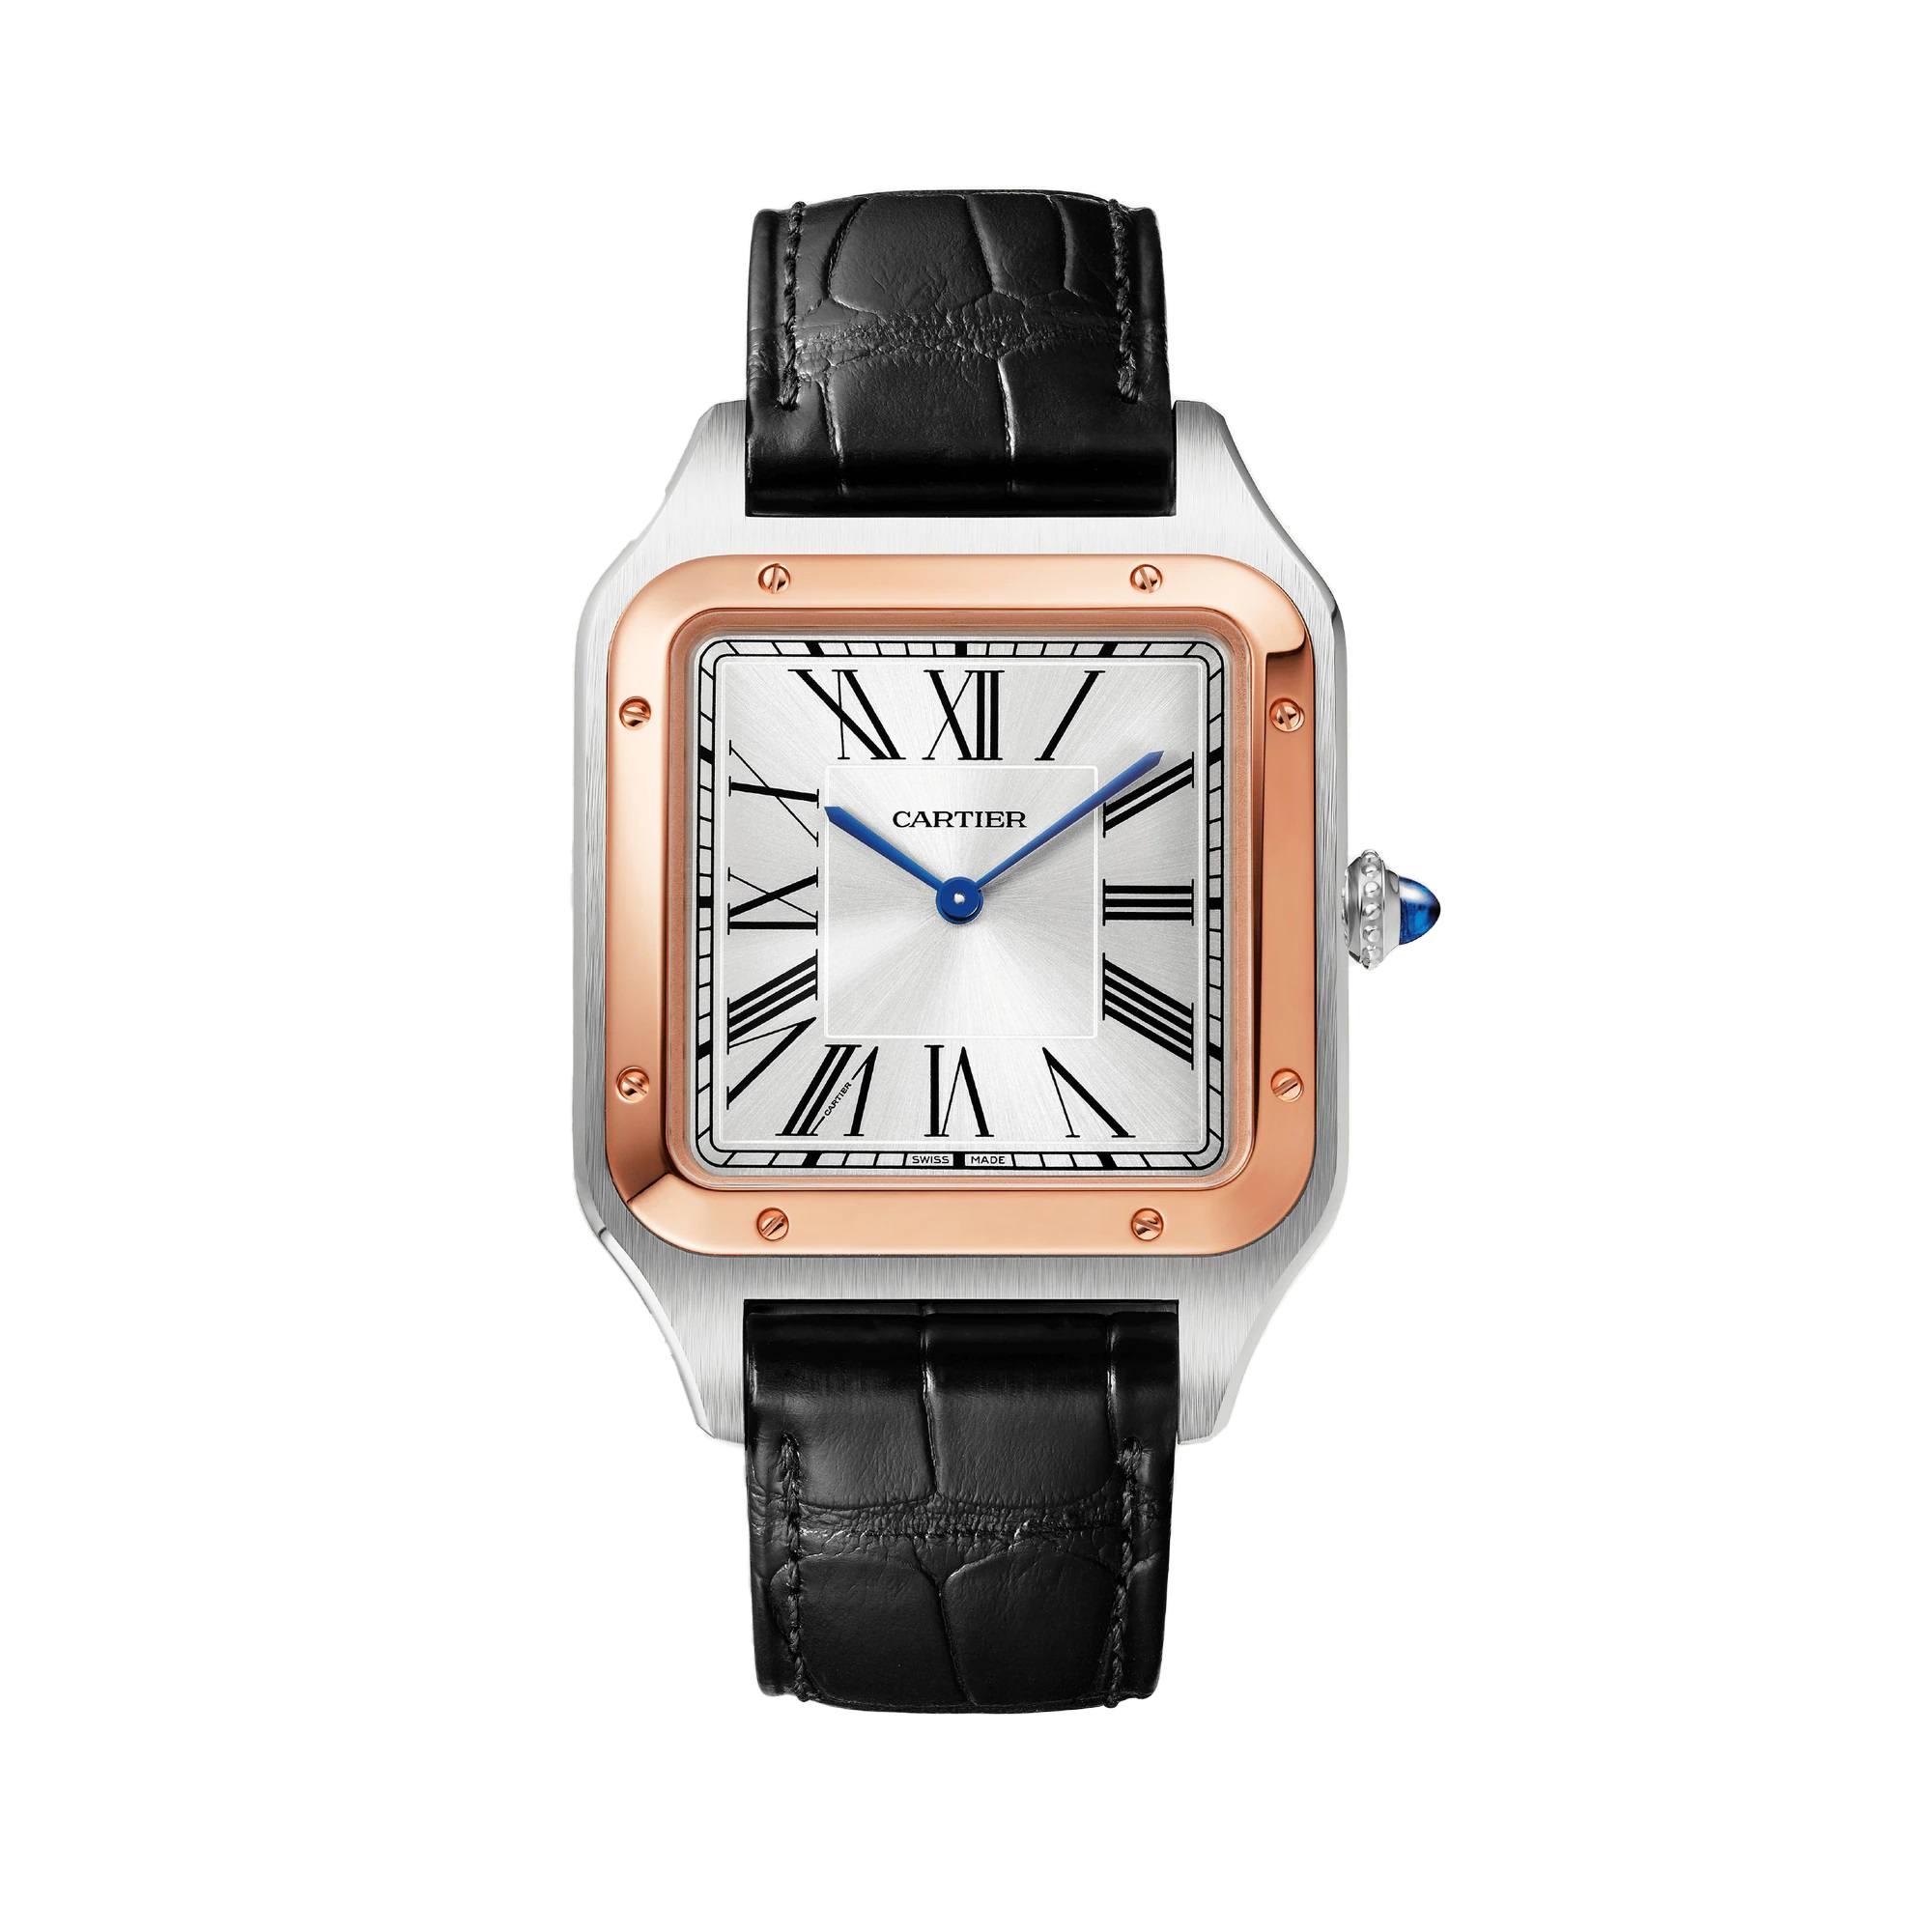 Cartier Santos-Dumont Watch in Rose Gold with Black Alligator Strap
